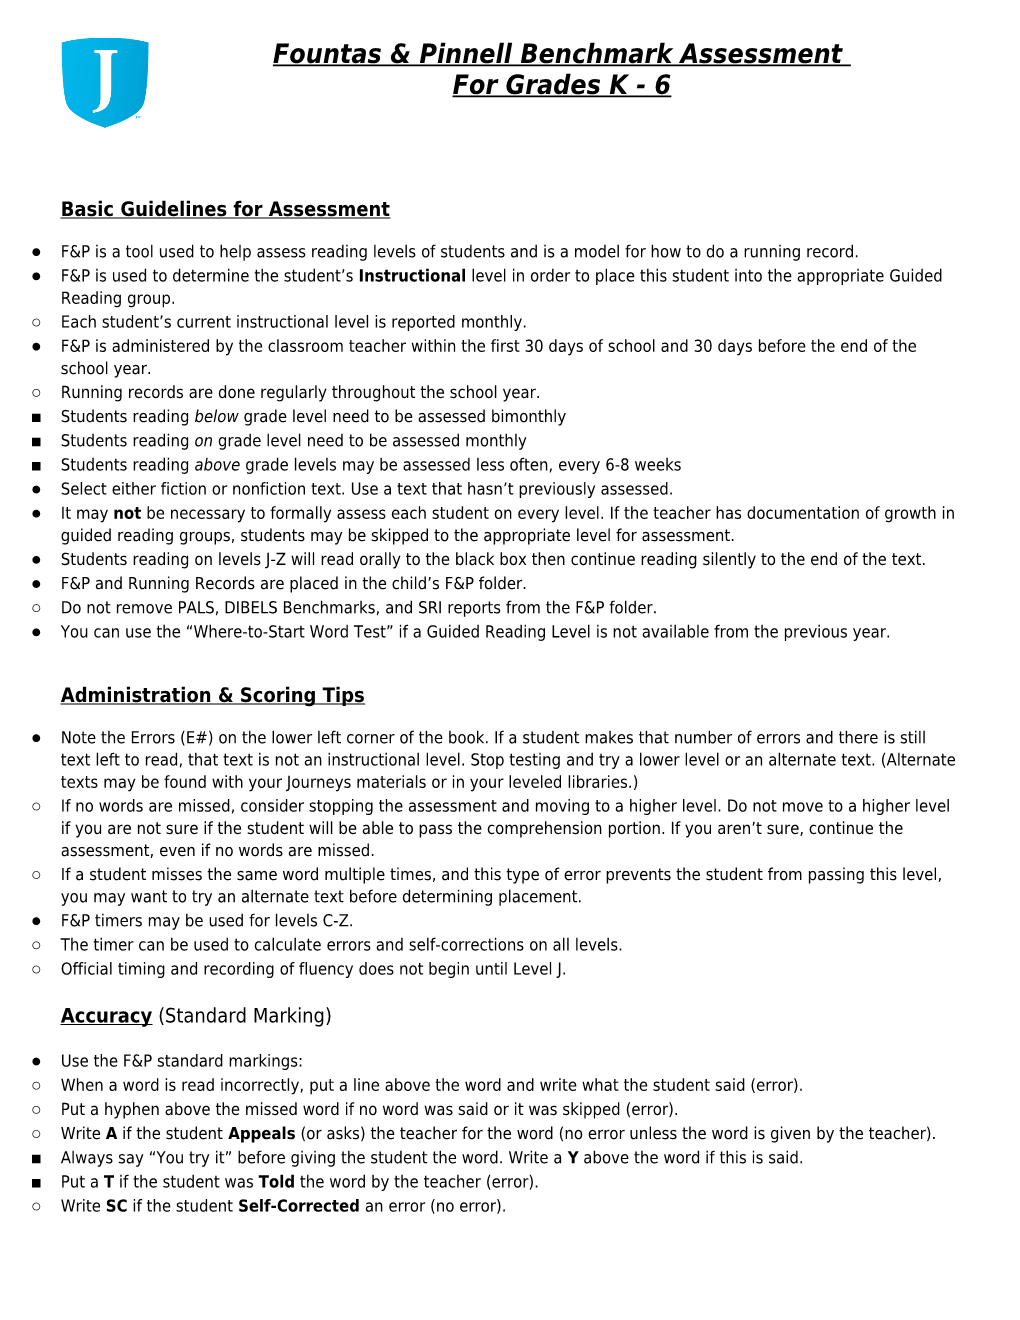 Basic Guidelines for Assessment